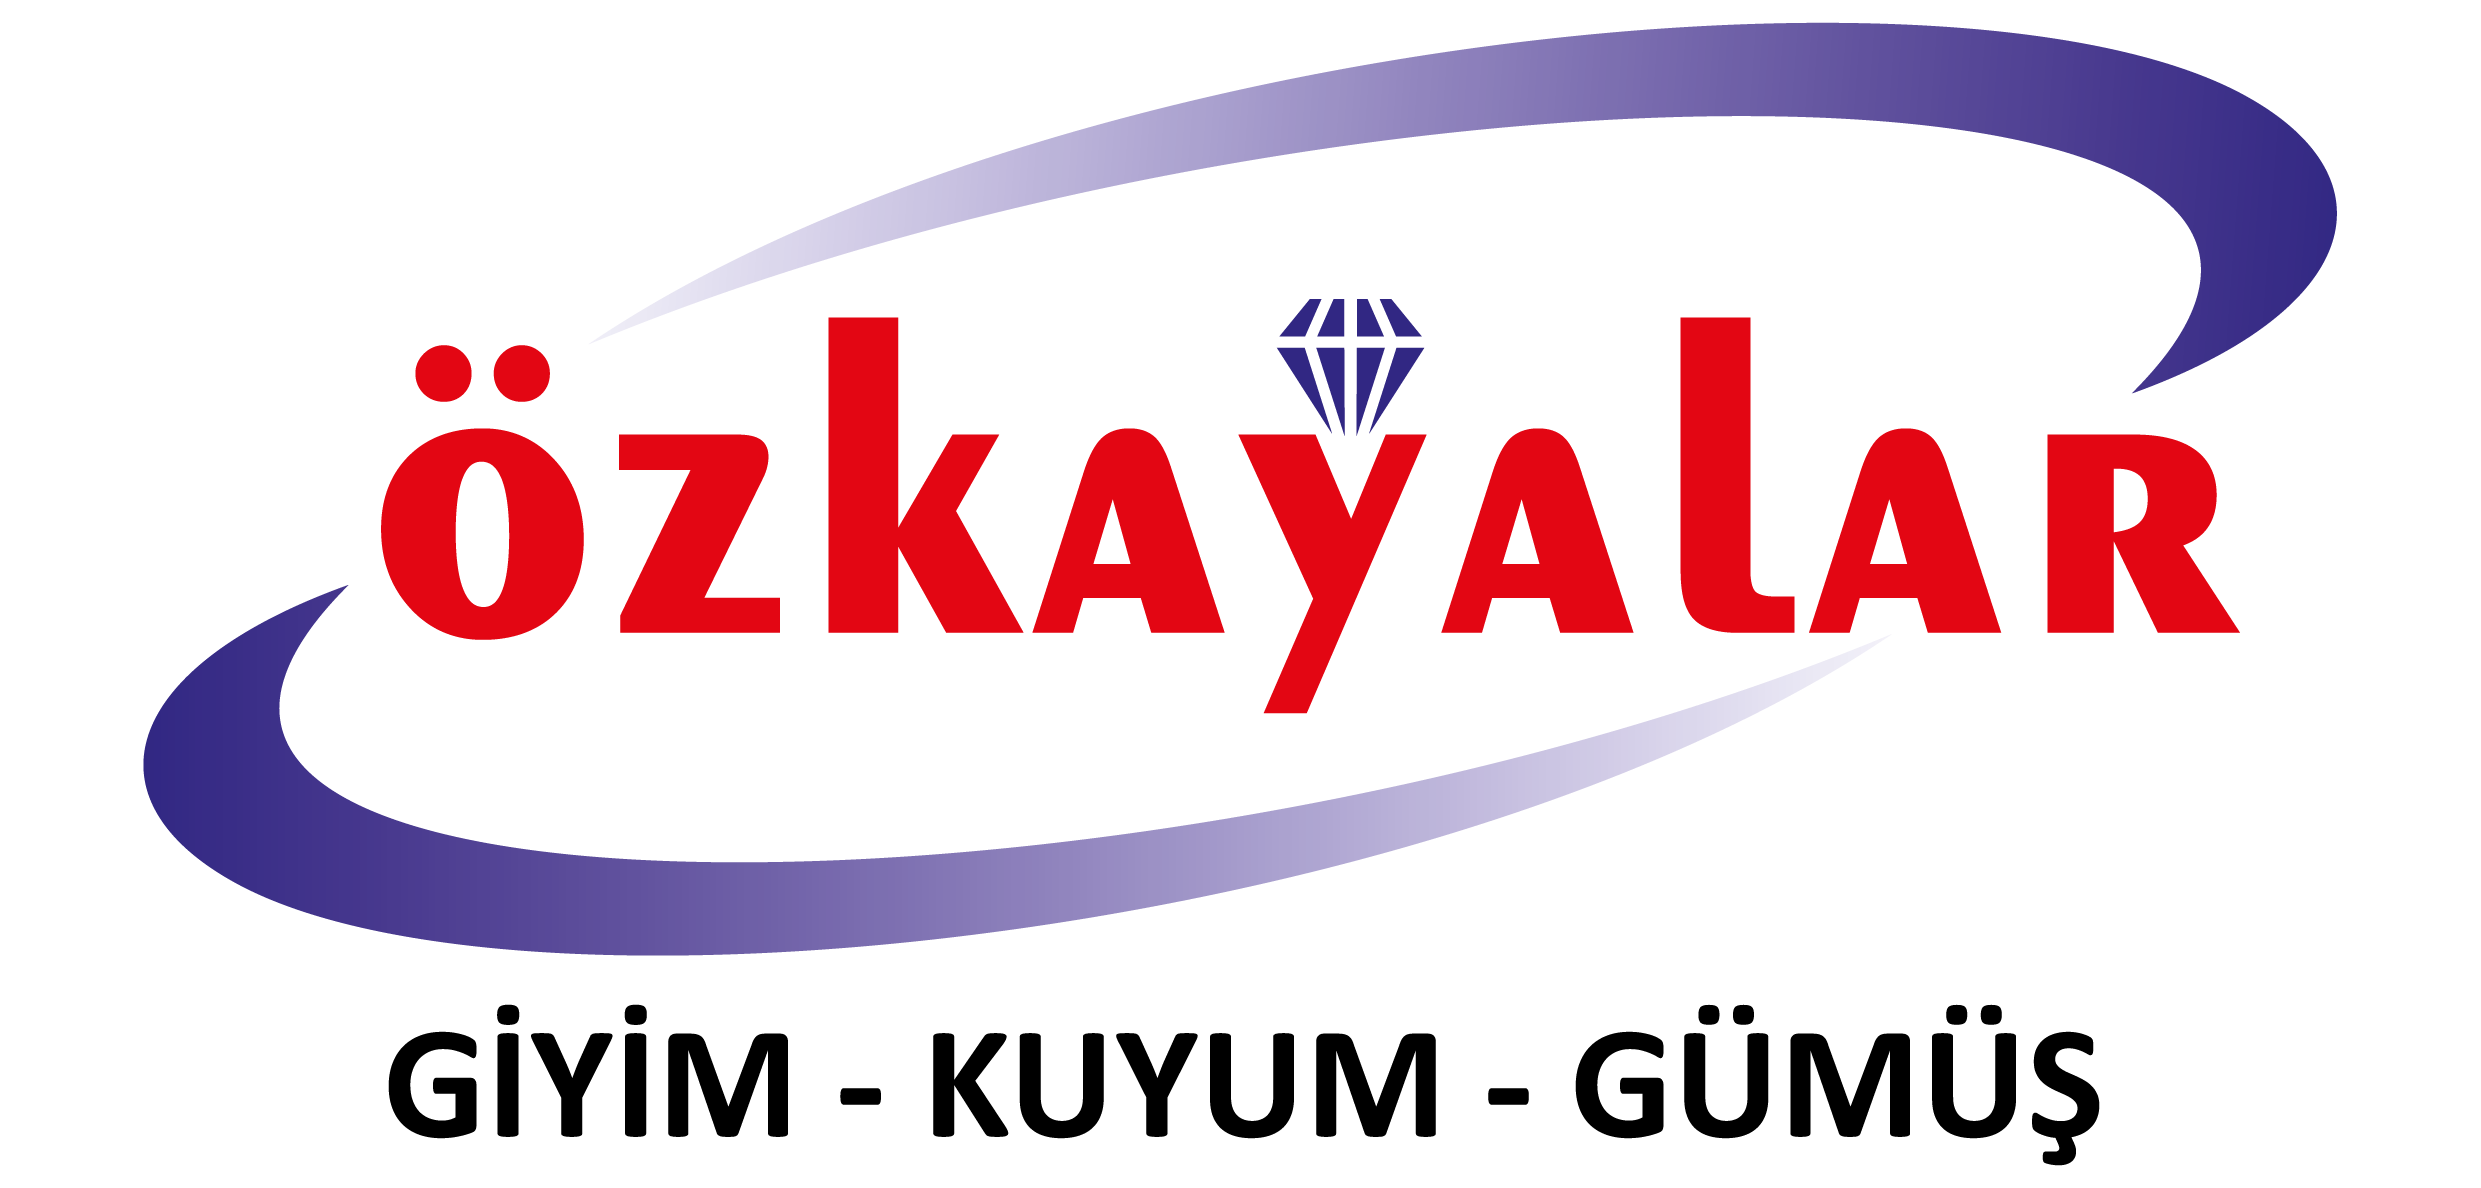 Özkayalar Group